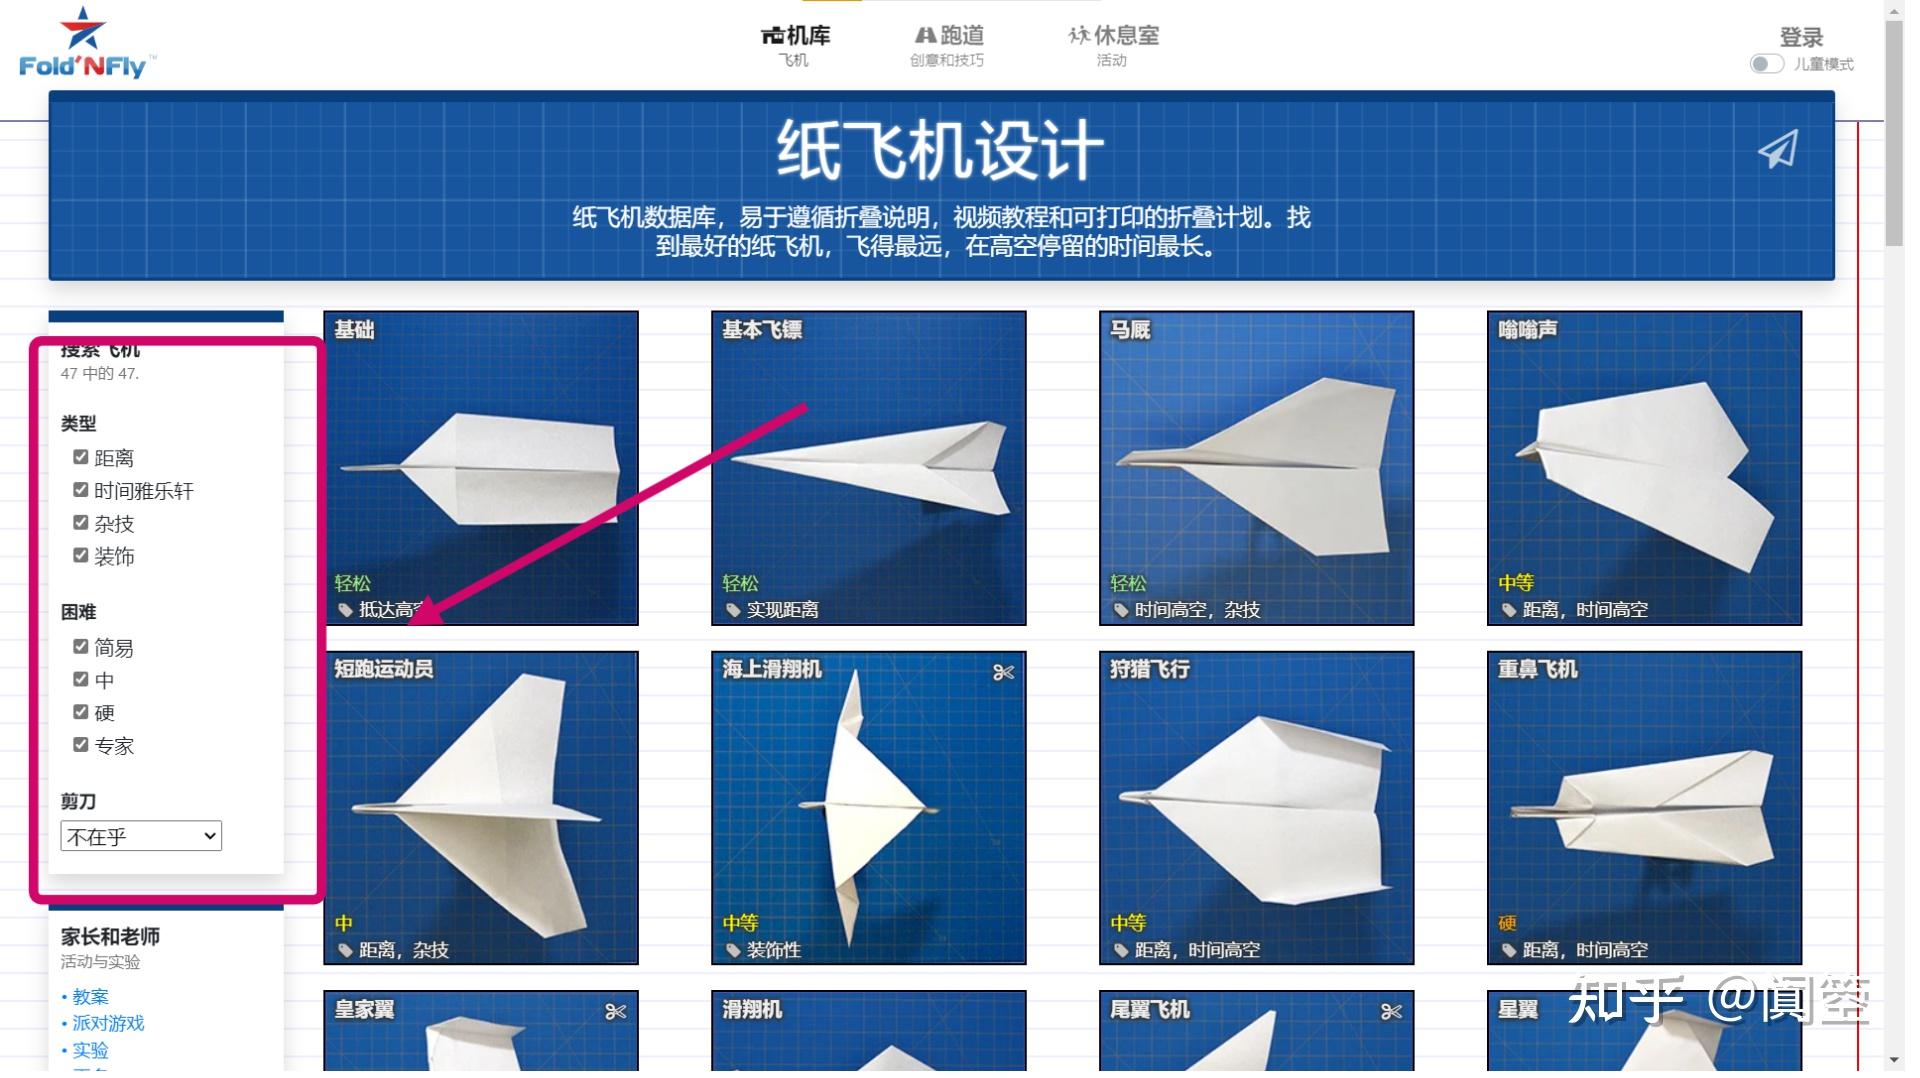 包含纸飞机中文版下载教程的词条